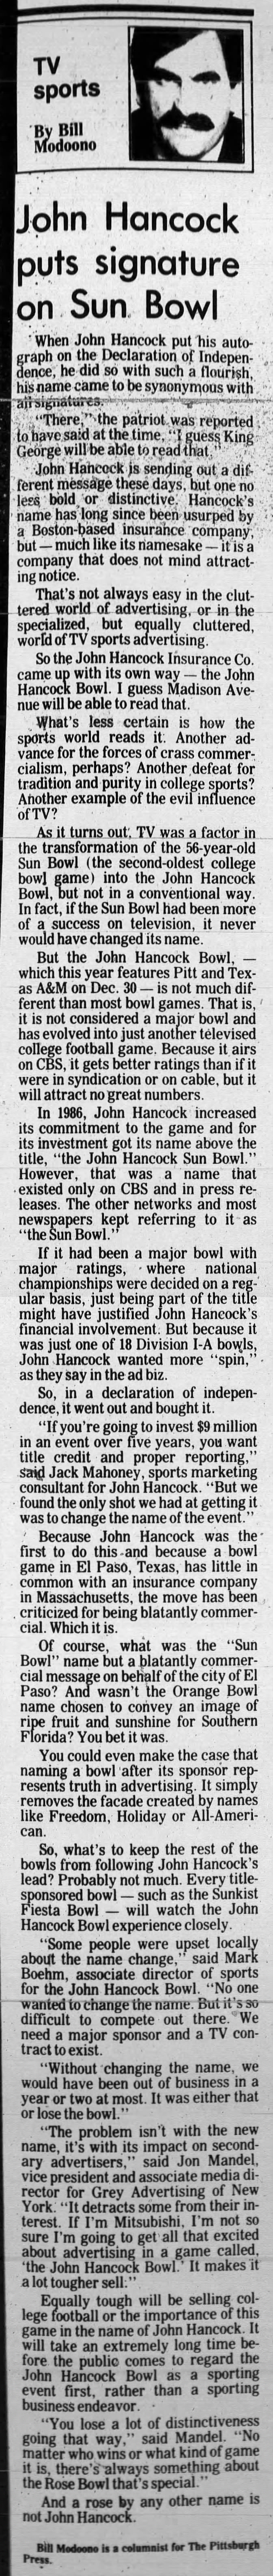 John Hancock puts signature on Sun Bowl